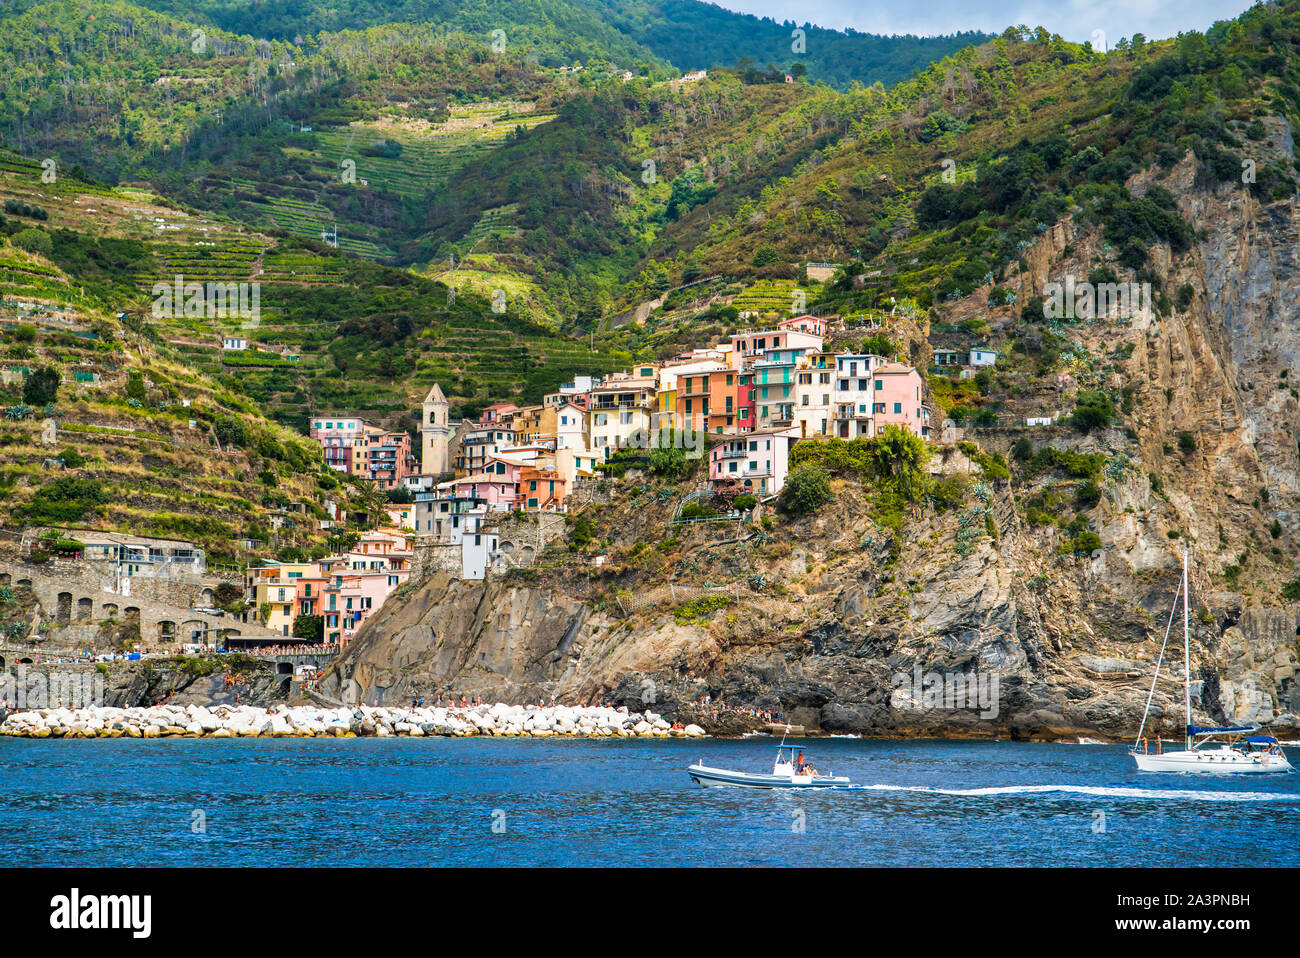 Manarola, Liguria, Italia - Agosto 17, 2019: pittoresco villaggio nella provincia ligure di La Spezia. Case colorate sulle rupi costiere. Il ligure Foto Stock